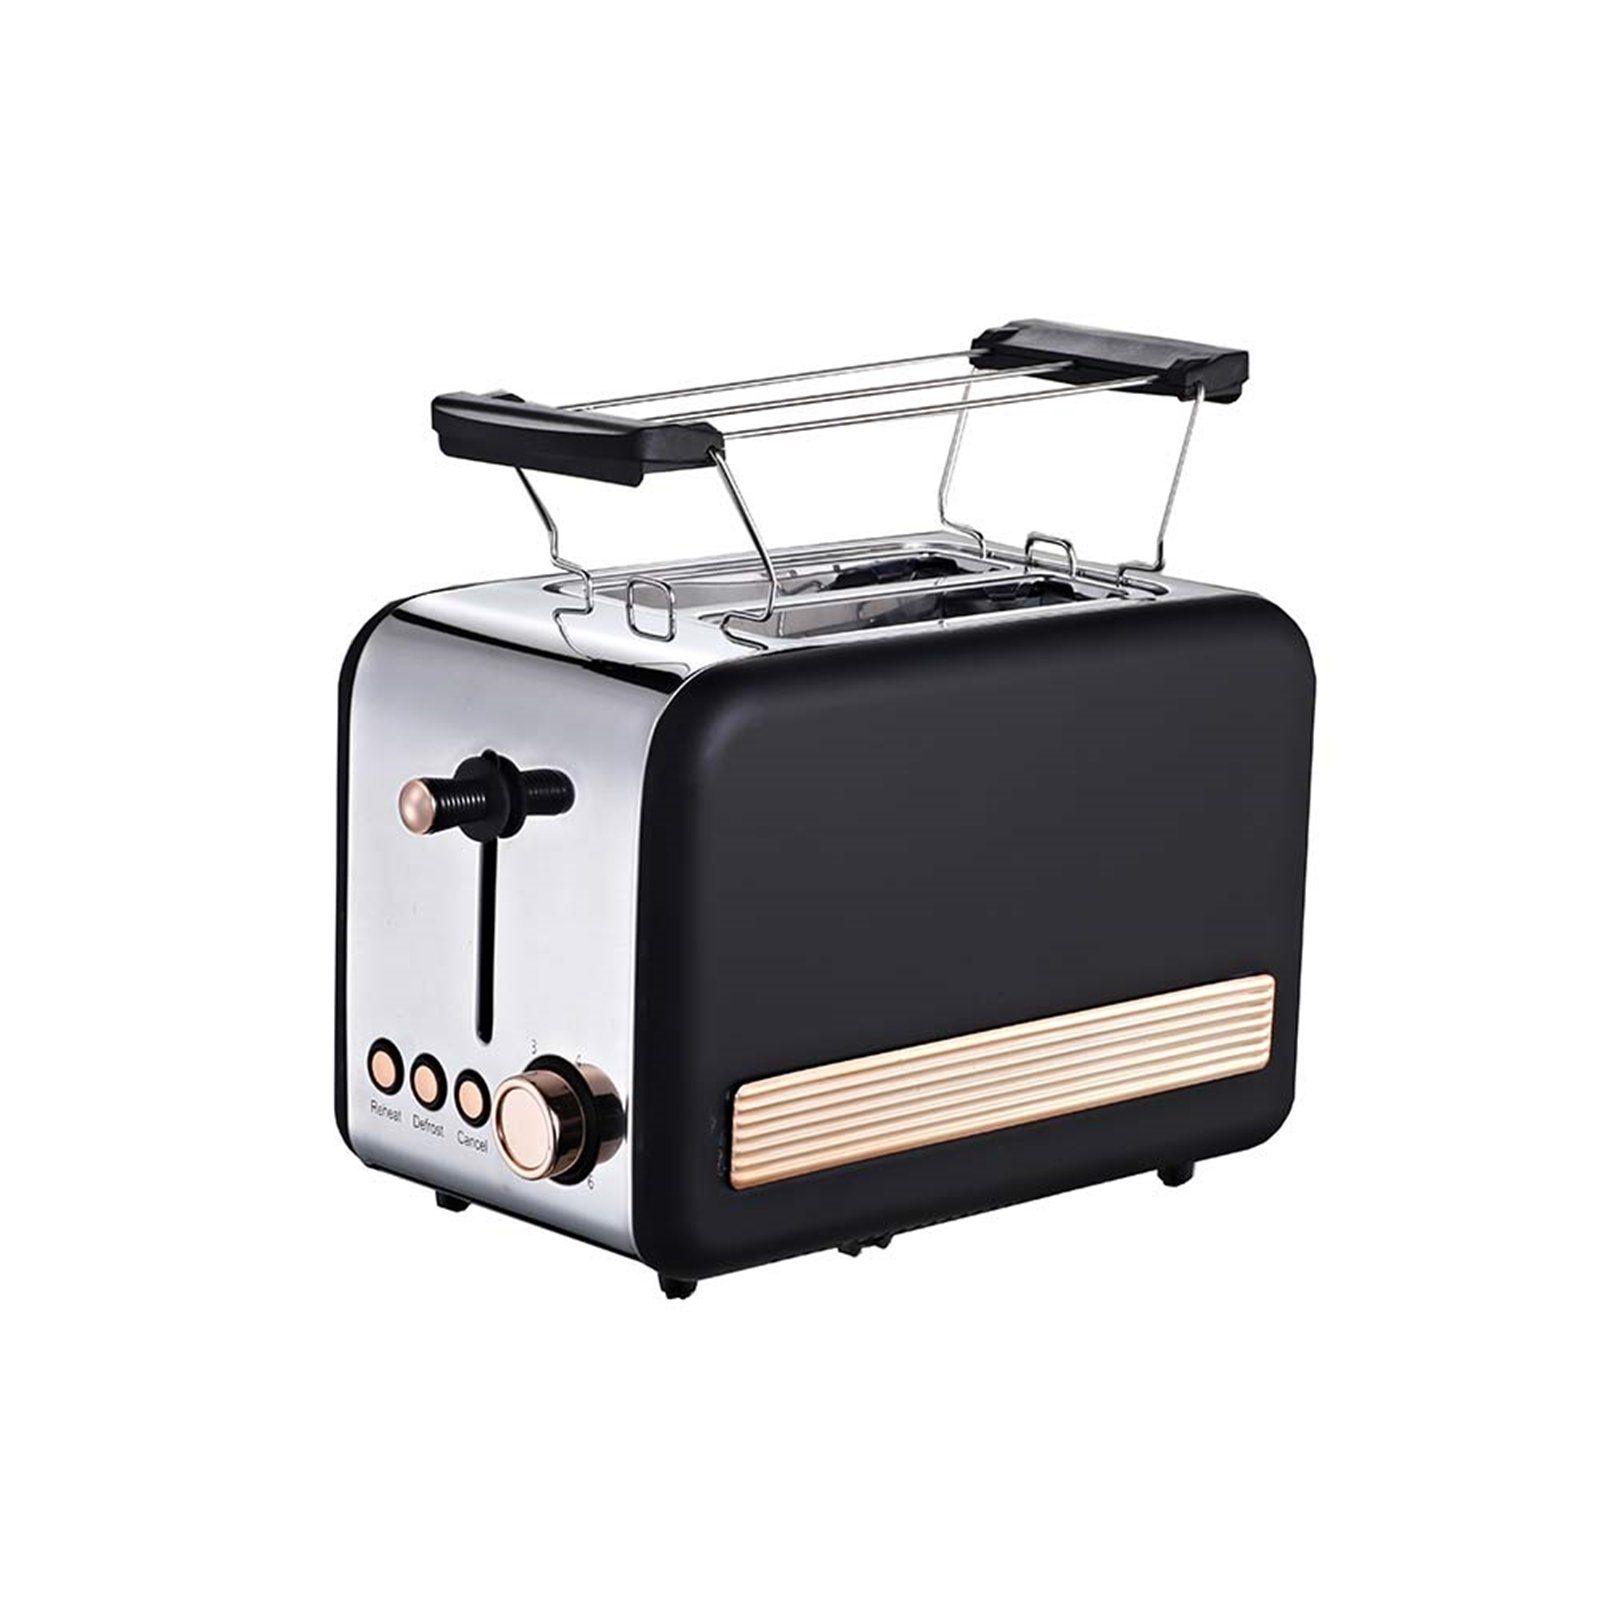 Scheiben Retro, Toaster Deluxe W 2 Toaster Michelino 850